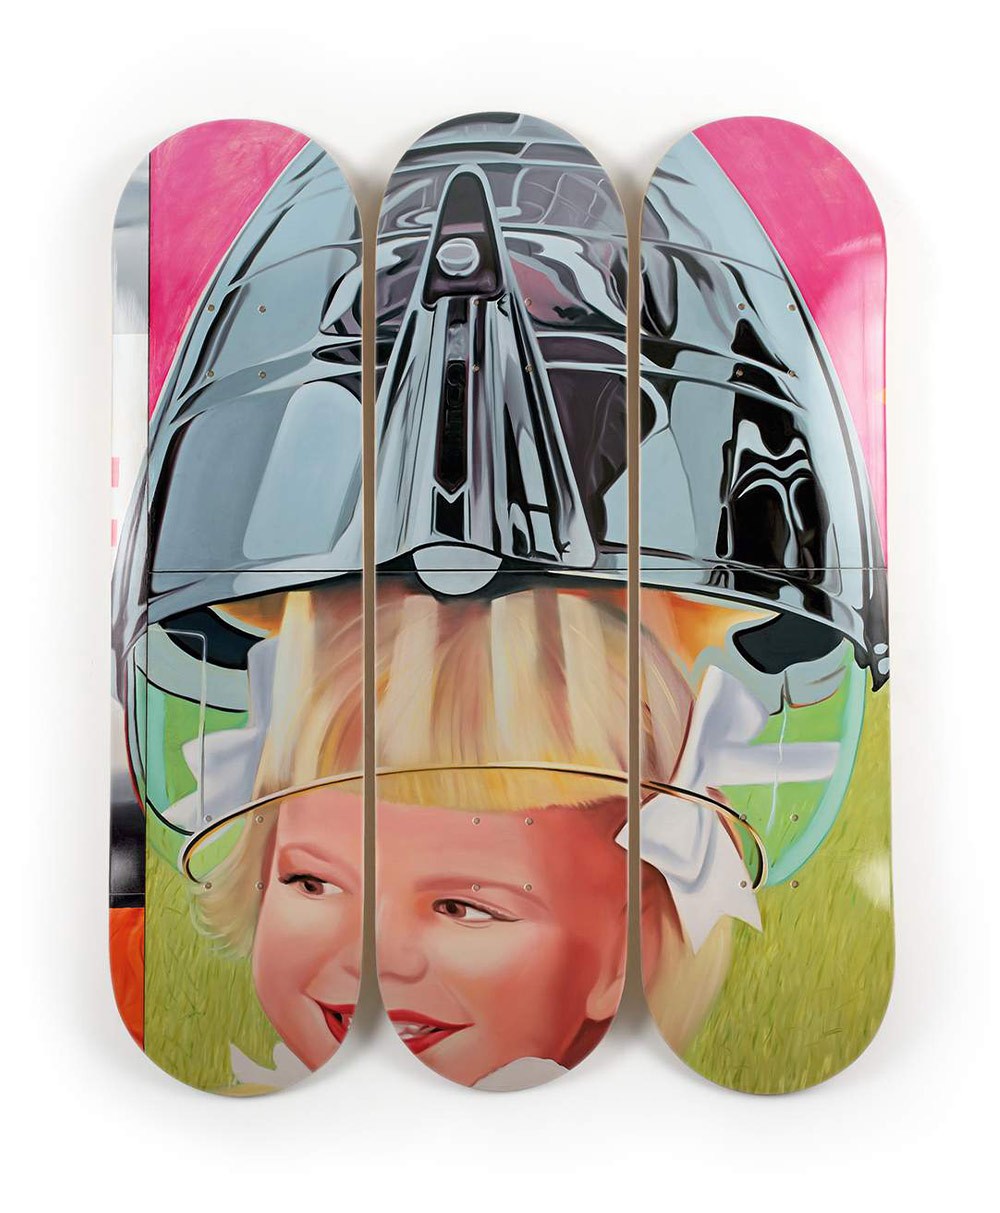 Produktbild "F-111 Triptych Girl" designed by James Rosenquist von The Skateroom im RAUM Conceptstore